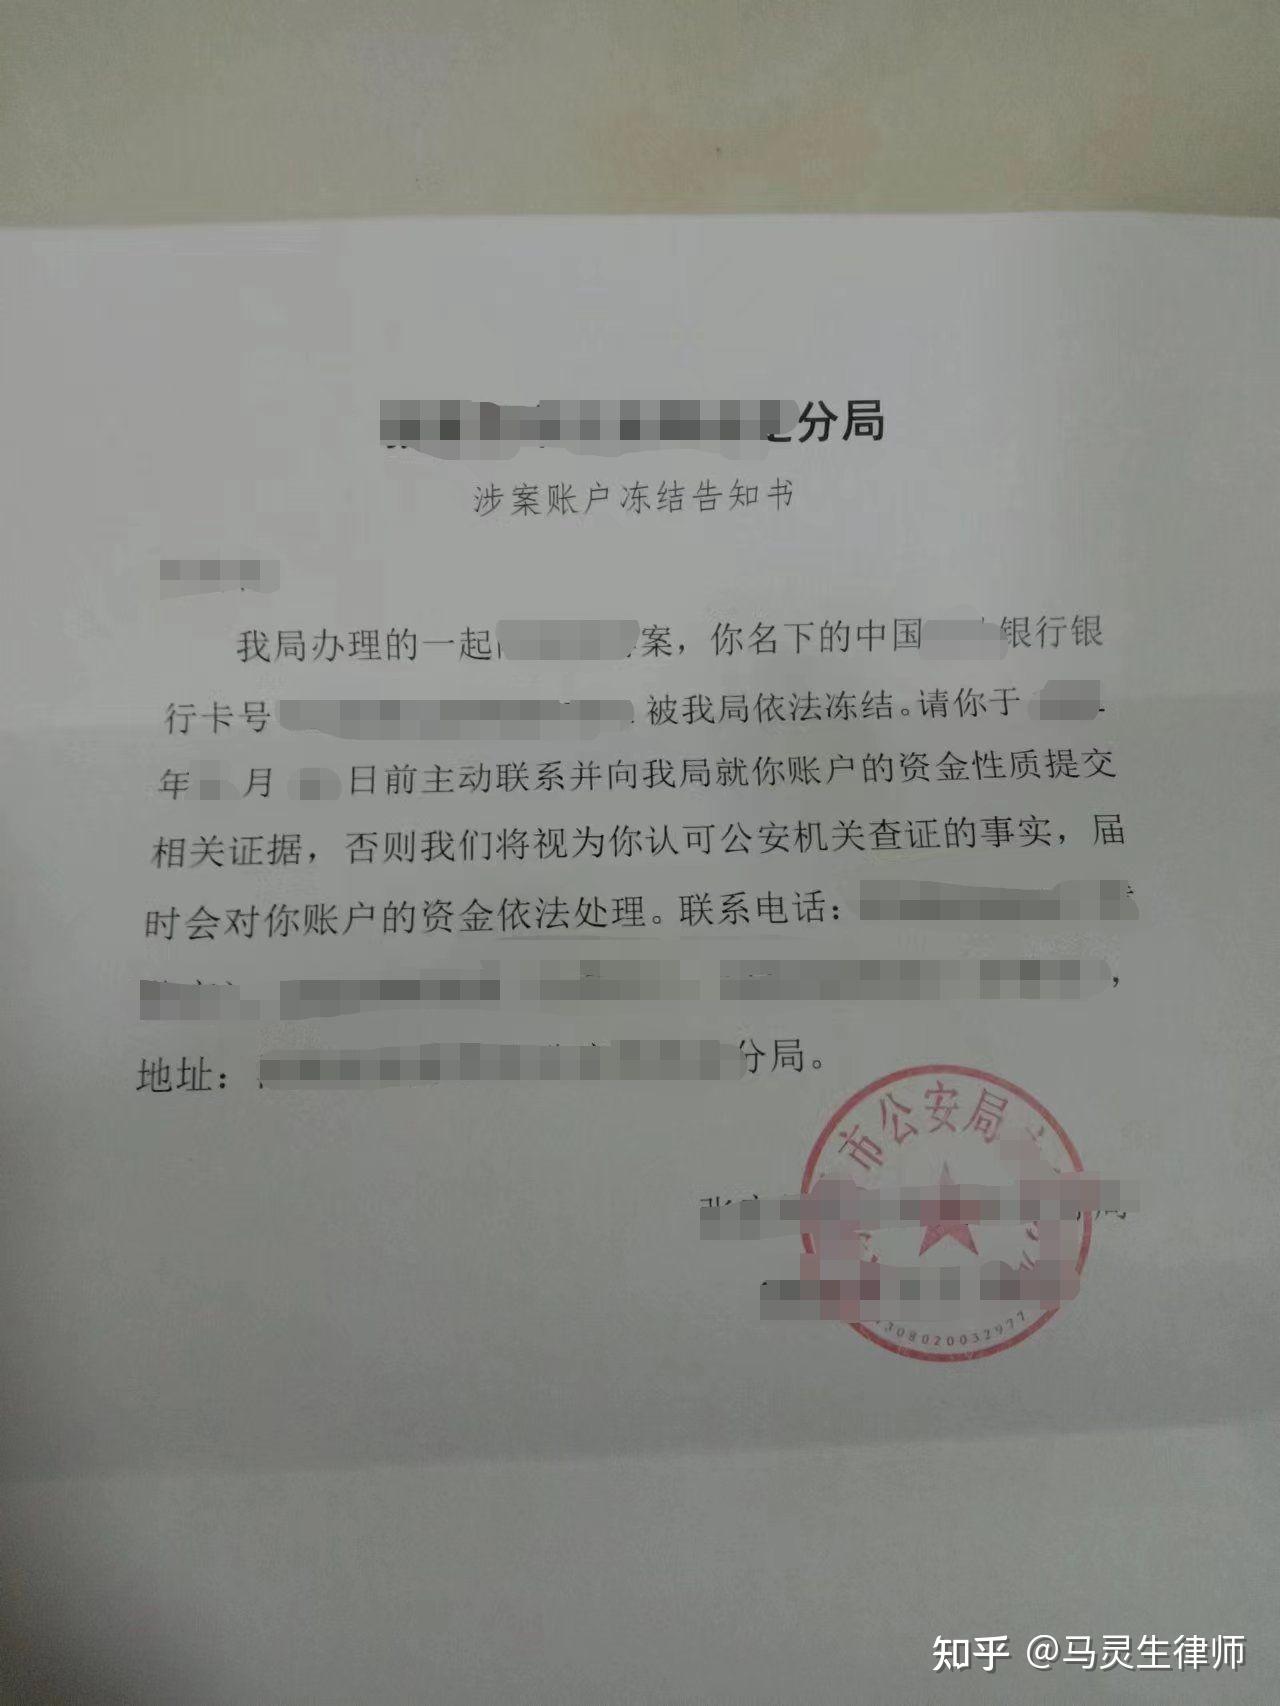 建设银行储蓄卡被北京公安局经济刑侦大队给冻结了。。。。 - 知乎